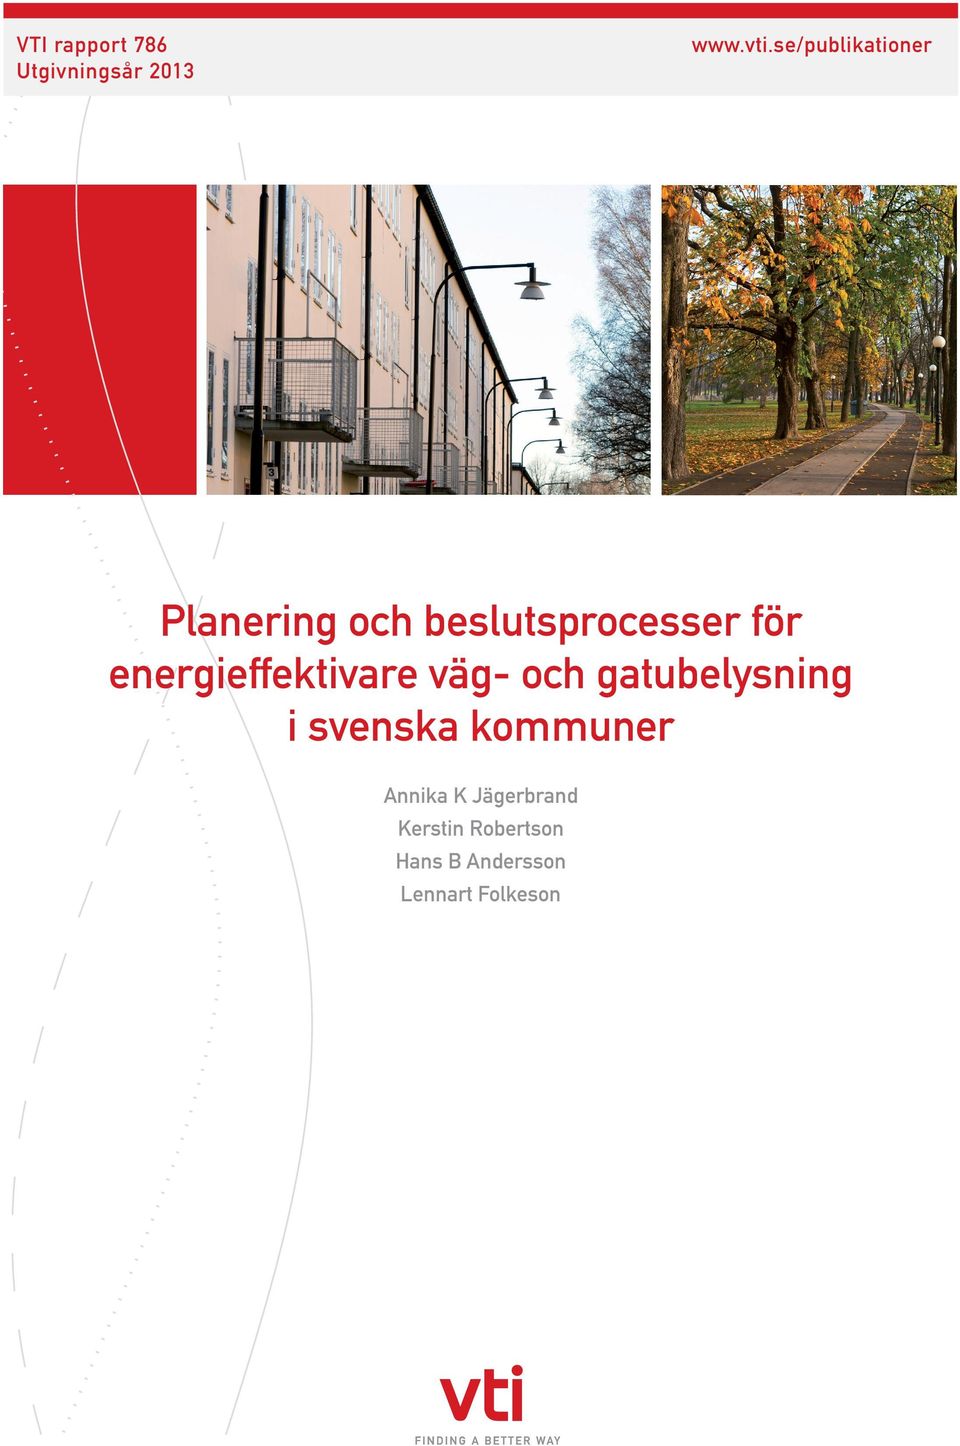 Planering och beslutsprocesser för energieffektivare